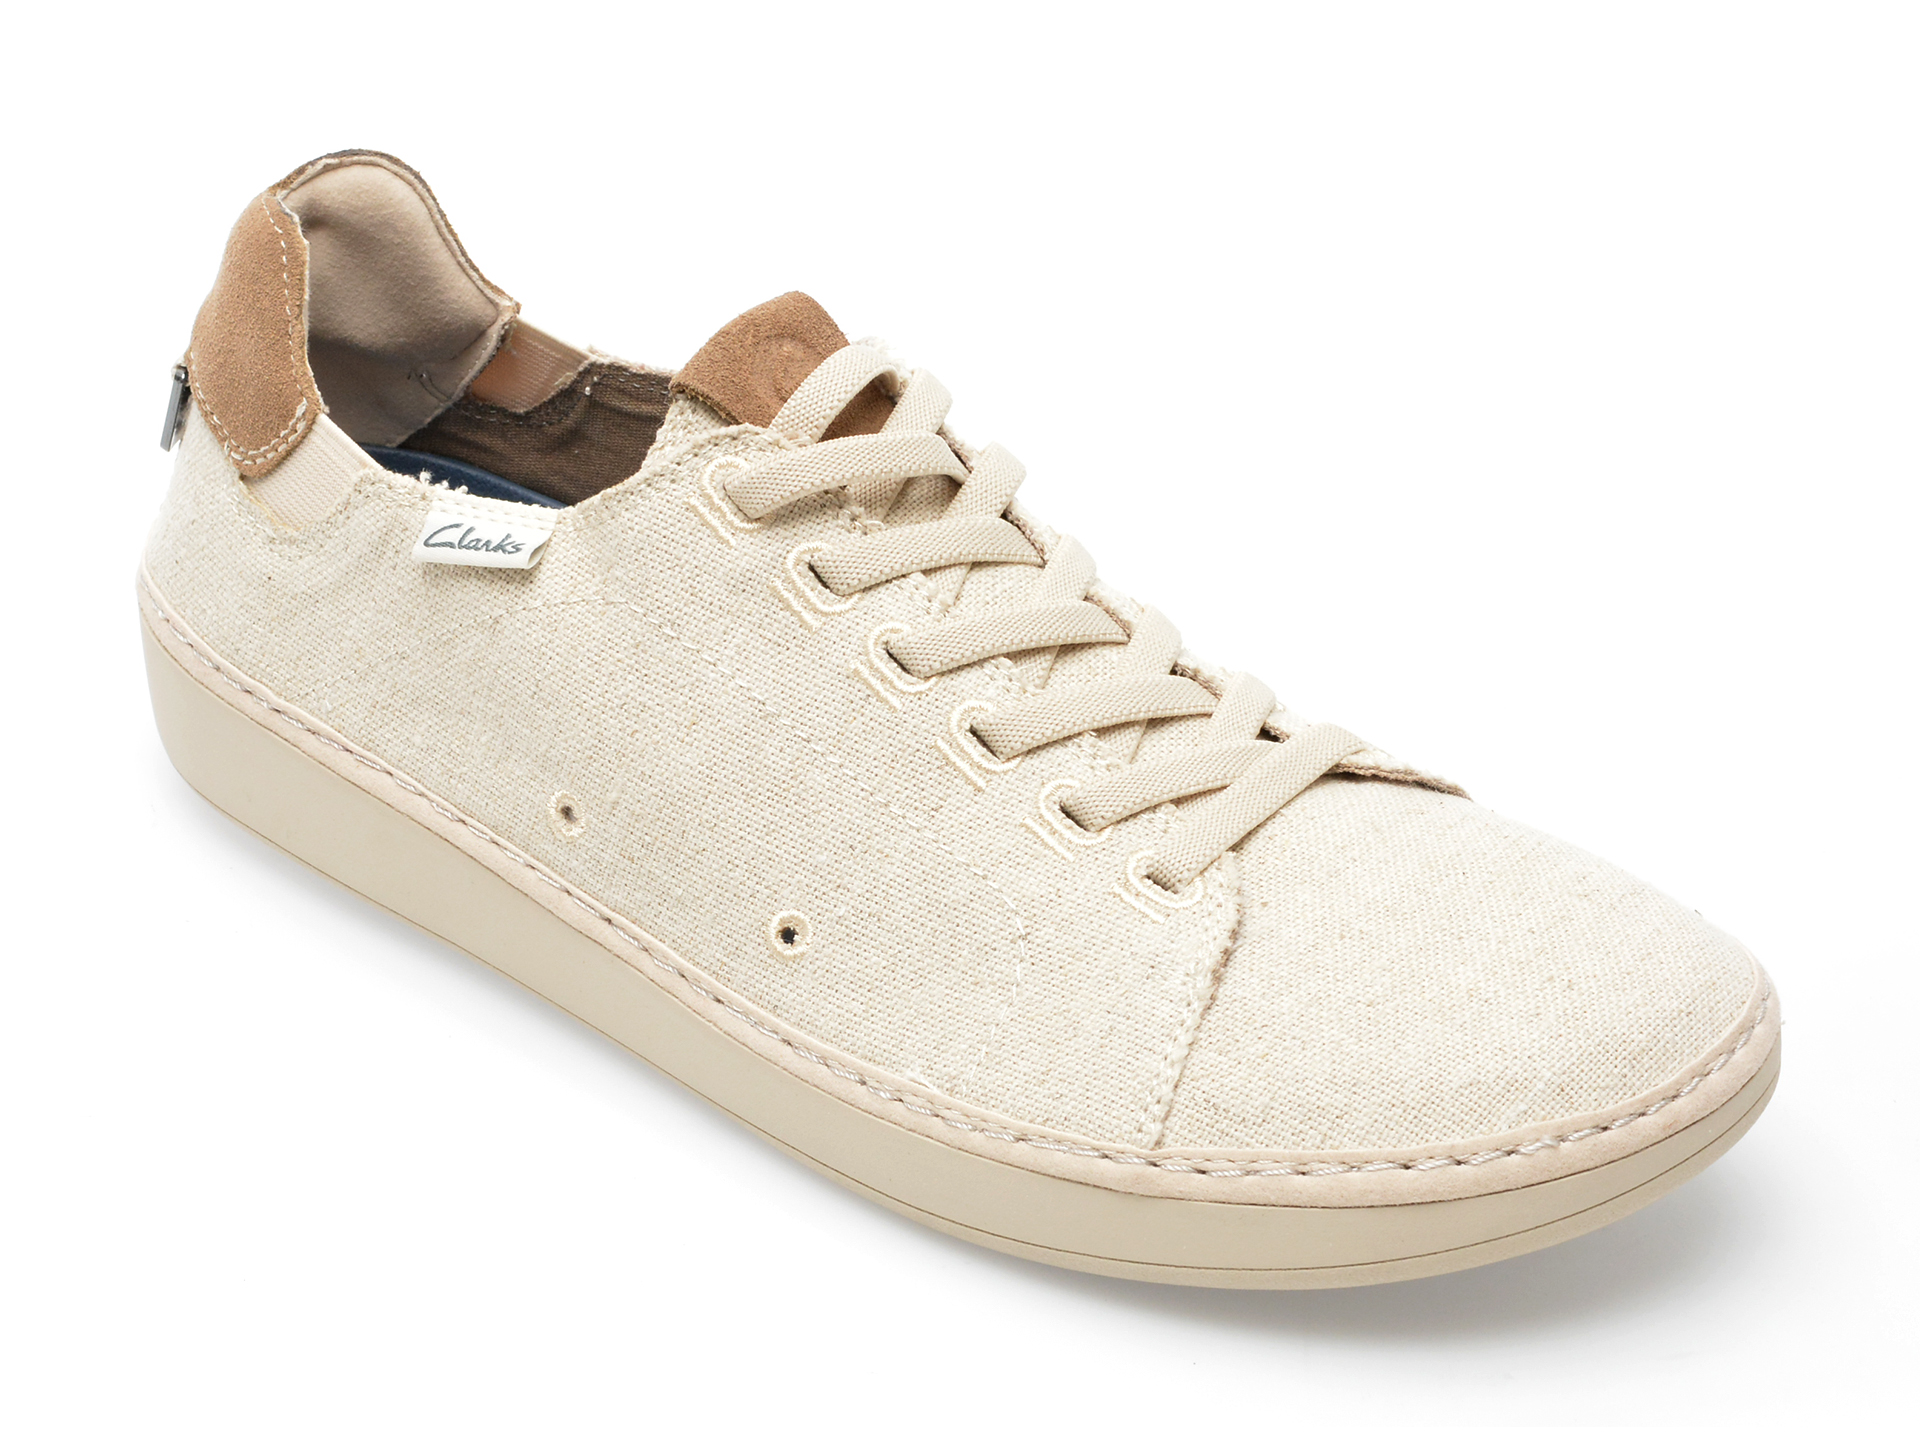 Pantofi CLARKS bej, HIGLEY LACE 0912, din material textil Clarks imagine noua 2022